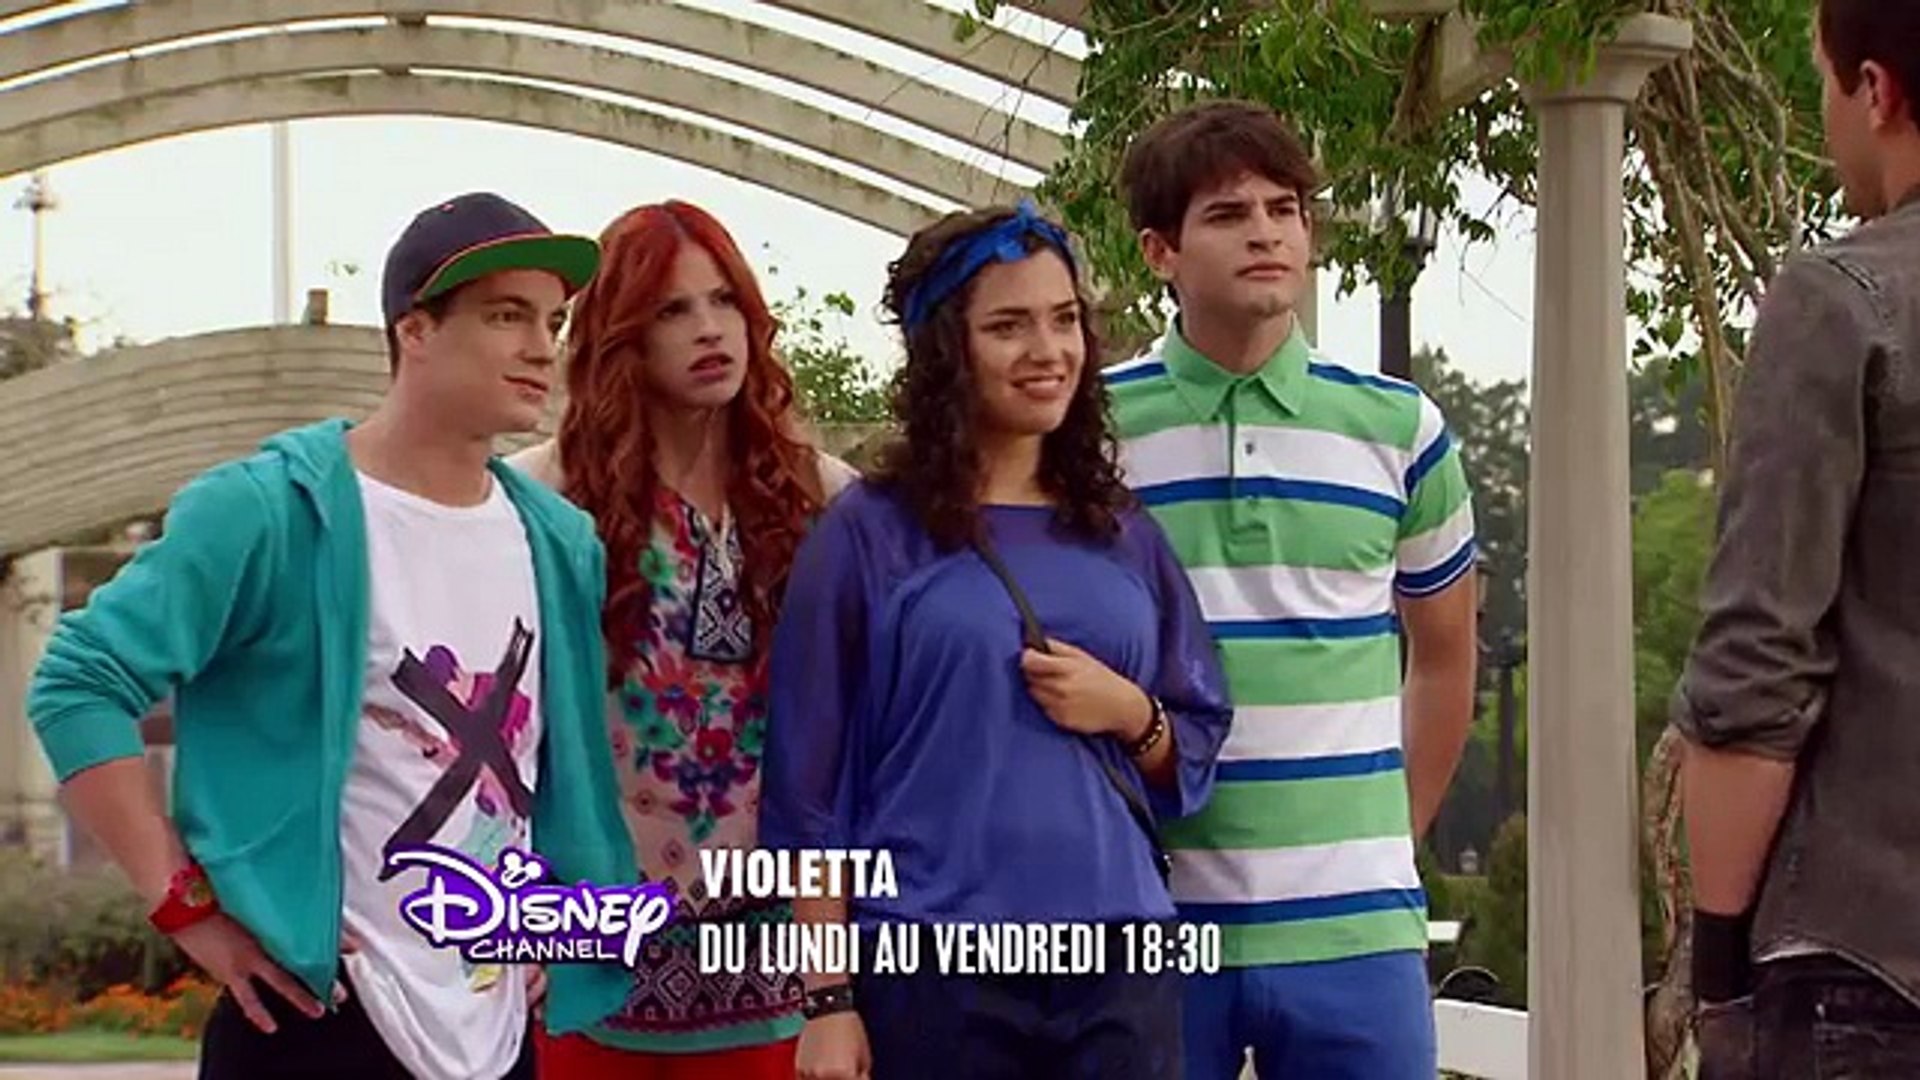 Violetta saison 3 - Résumé des épisodes 1 à 5 - Exclusivité Disney Channel  - Dailymotion Video